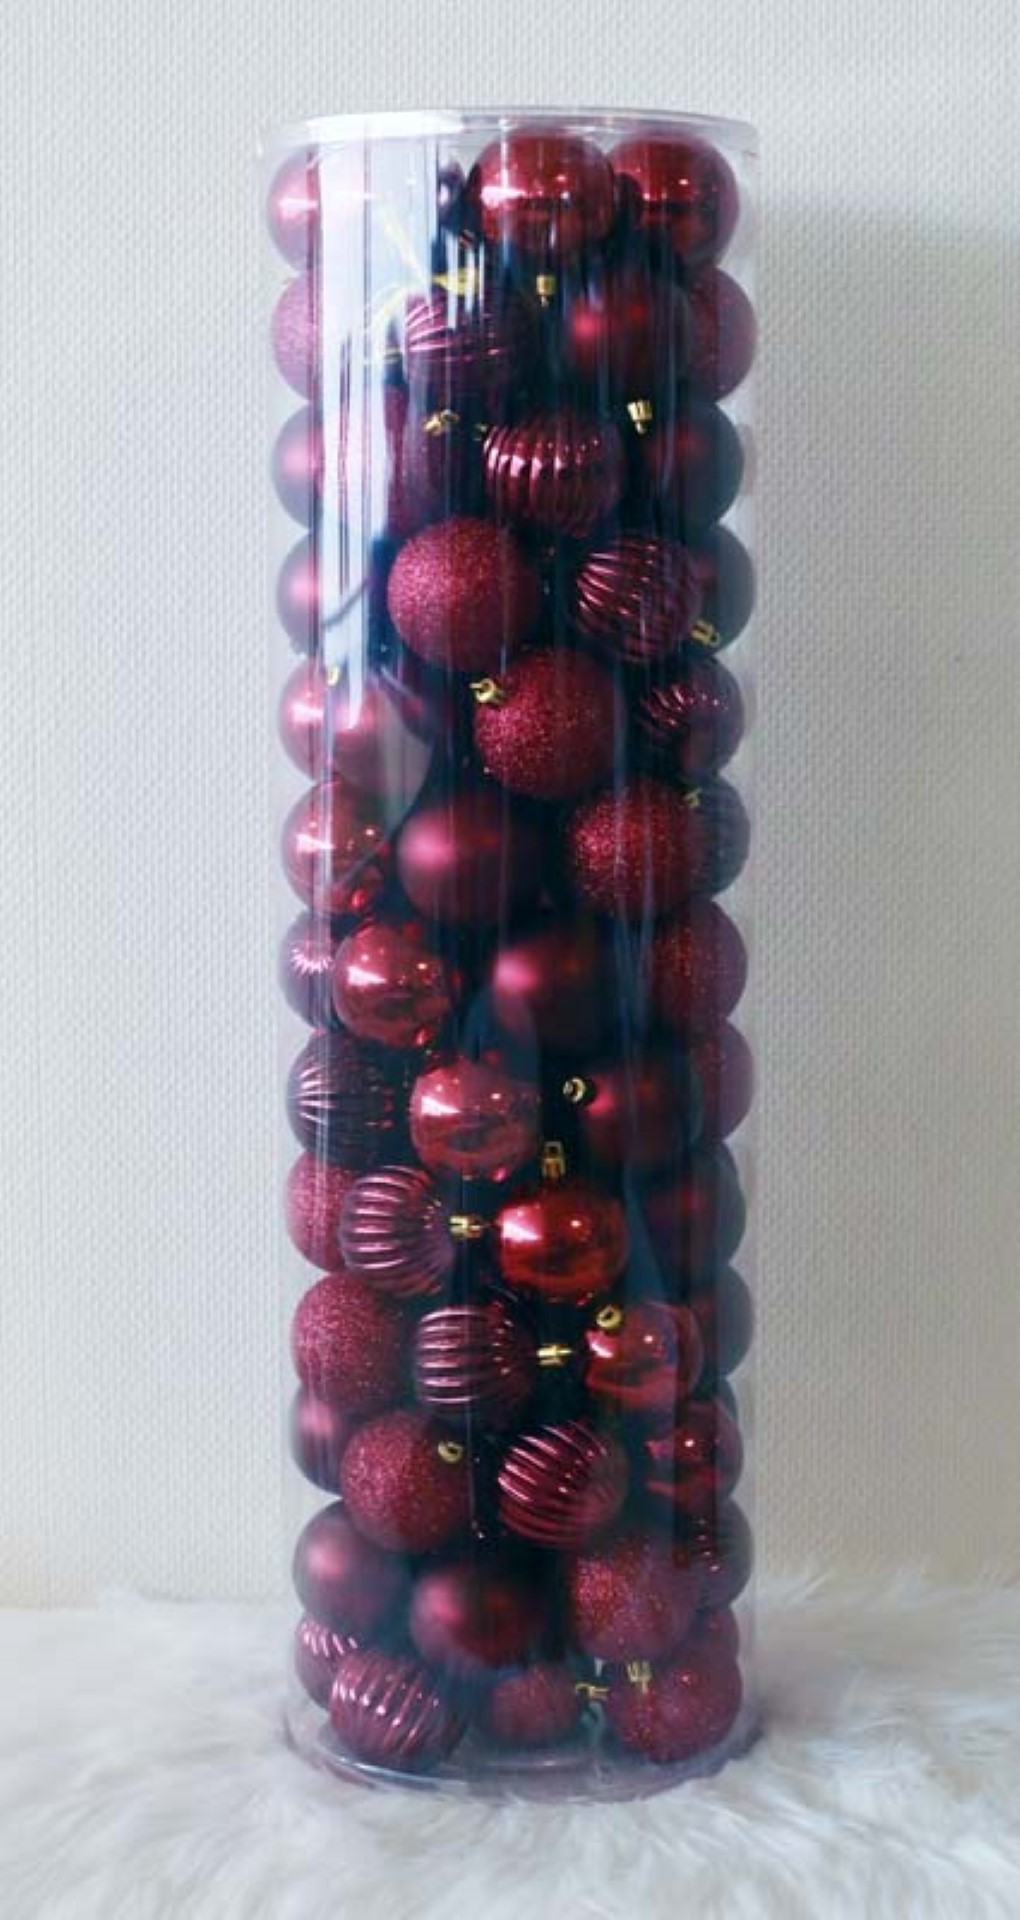 100 Onbreekbare kerstballen in koker doorsnee 6 cm bordeauxrood watermeloen - Oosterik Home